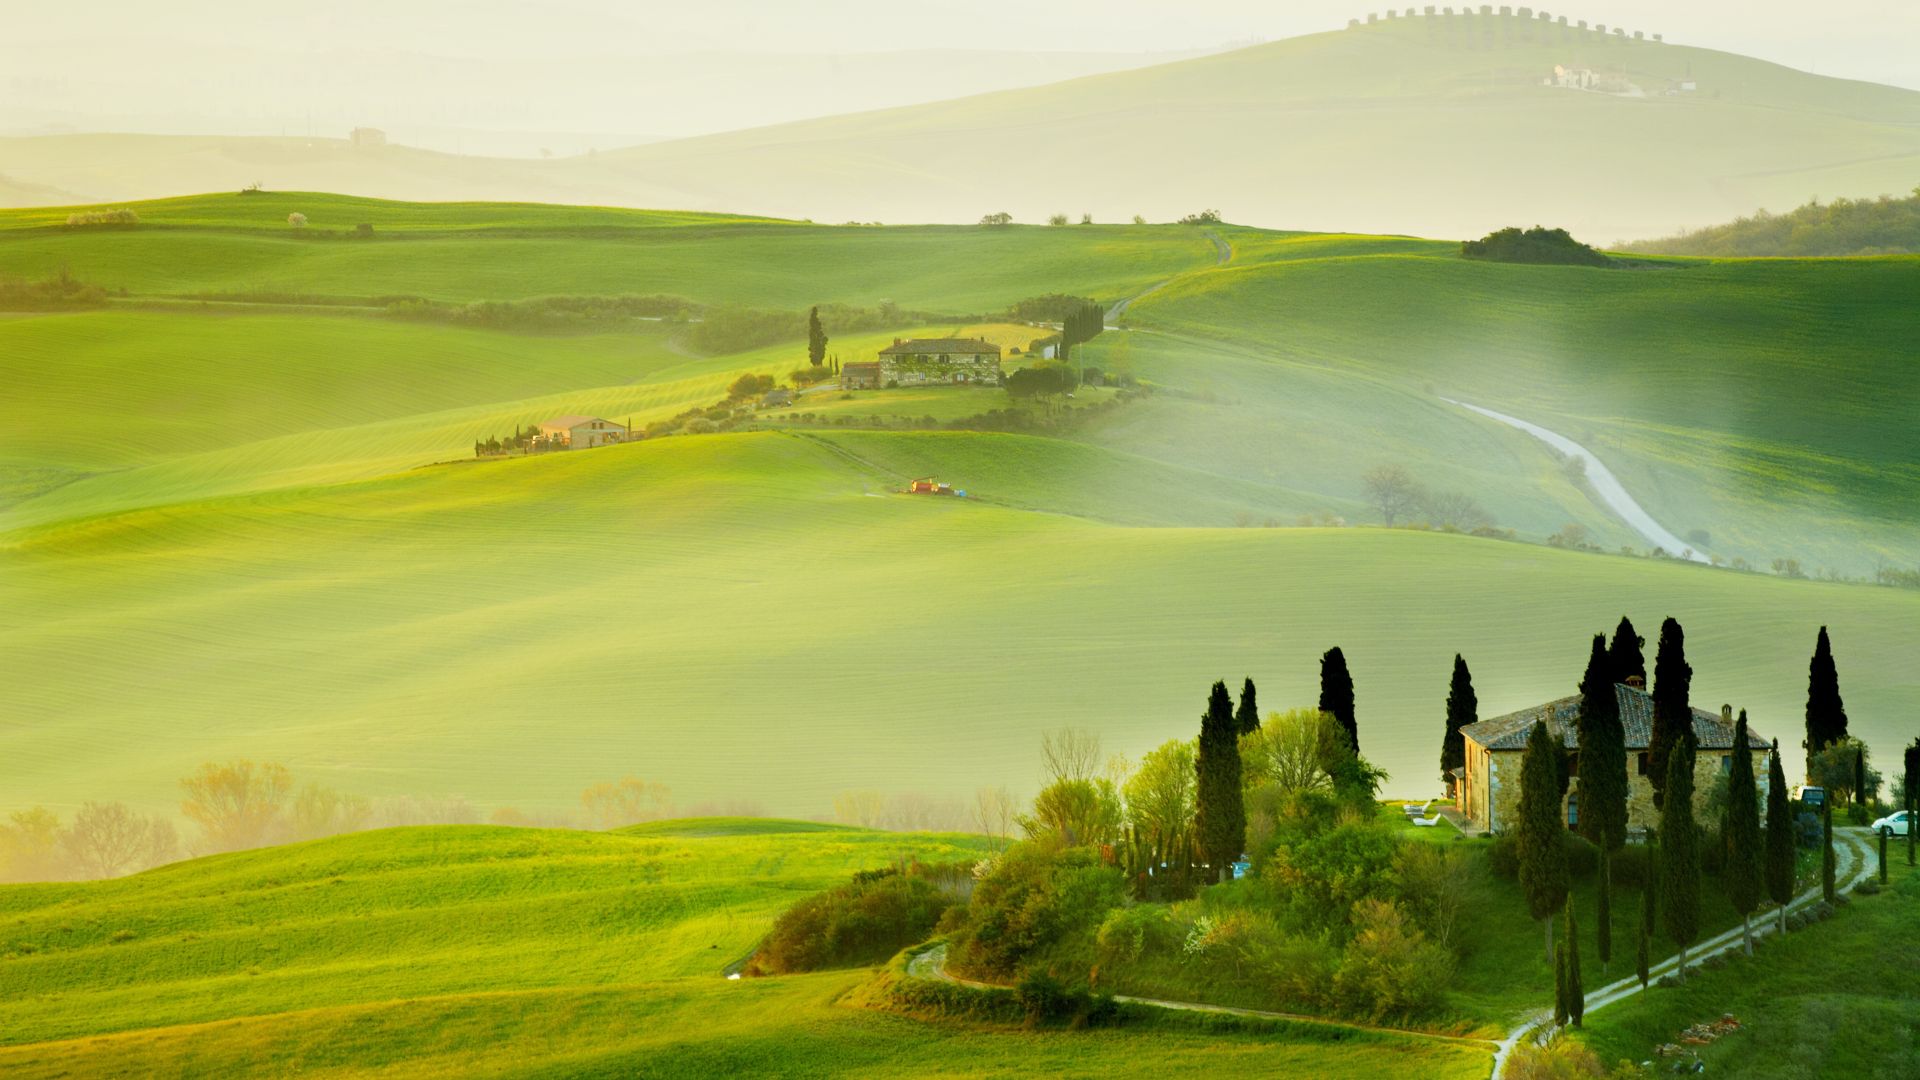 Tuscany, Italy, Europe, hills, field, fog, 5k (horizontal)